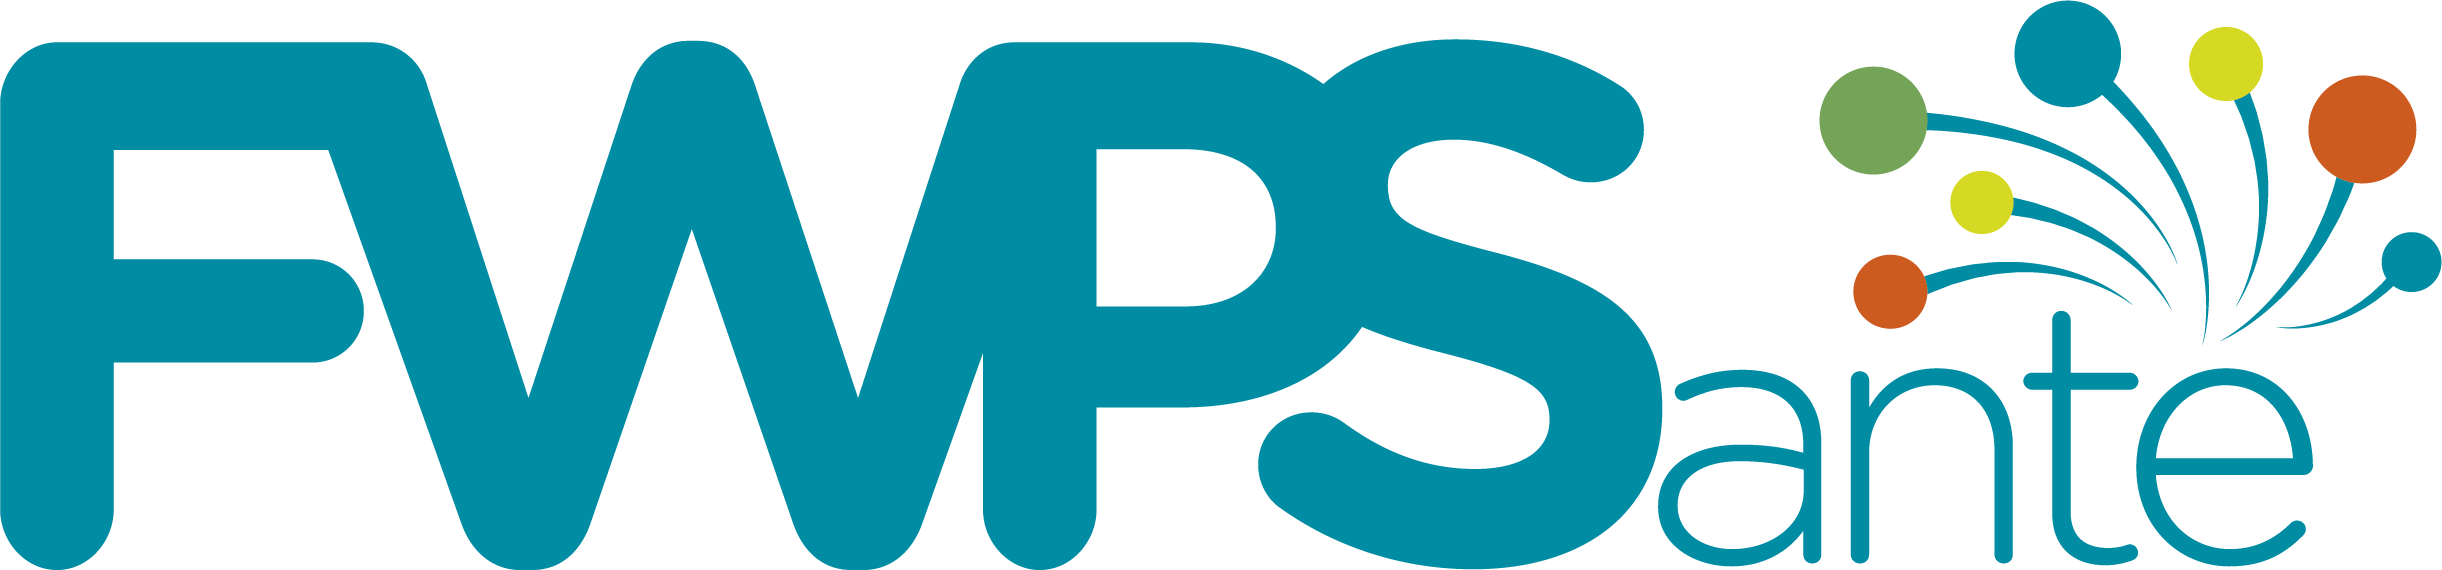 Logo FWPSanté - sans texte - couleurs